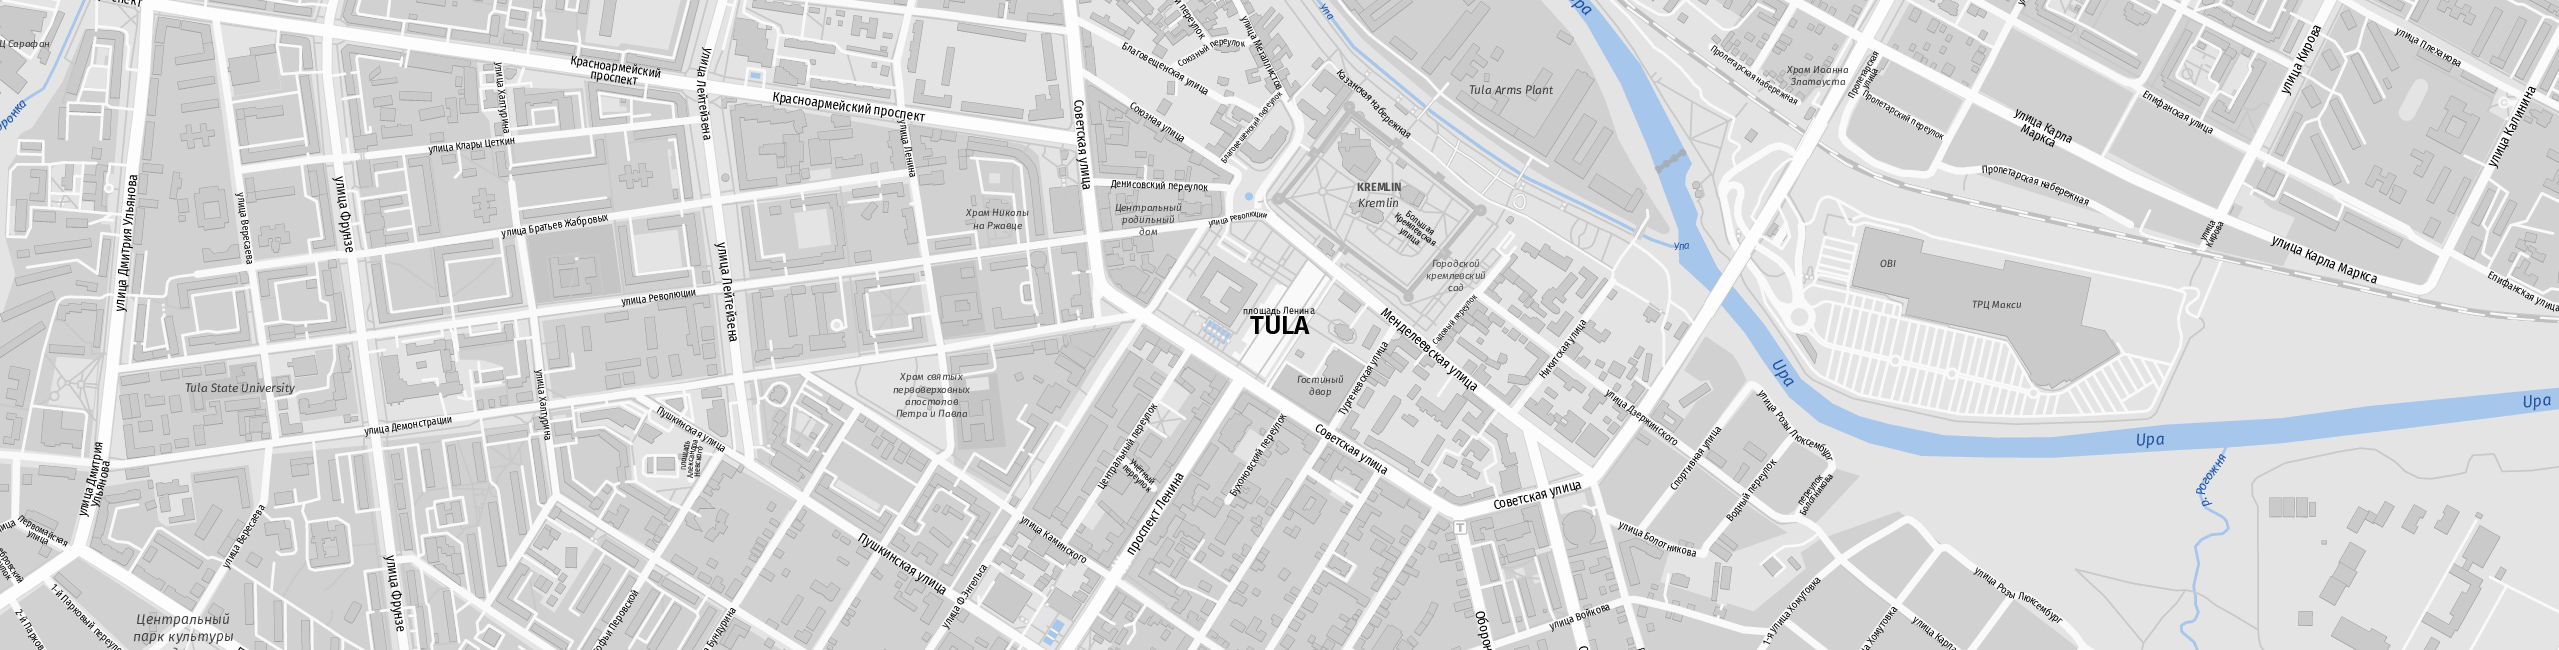 Stadtplan Tula zum Downloaden.